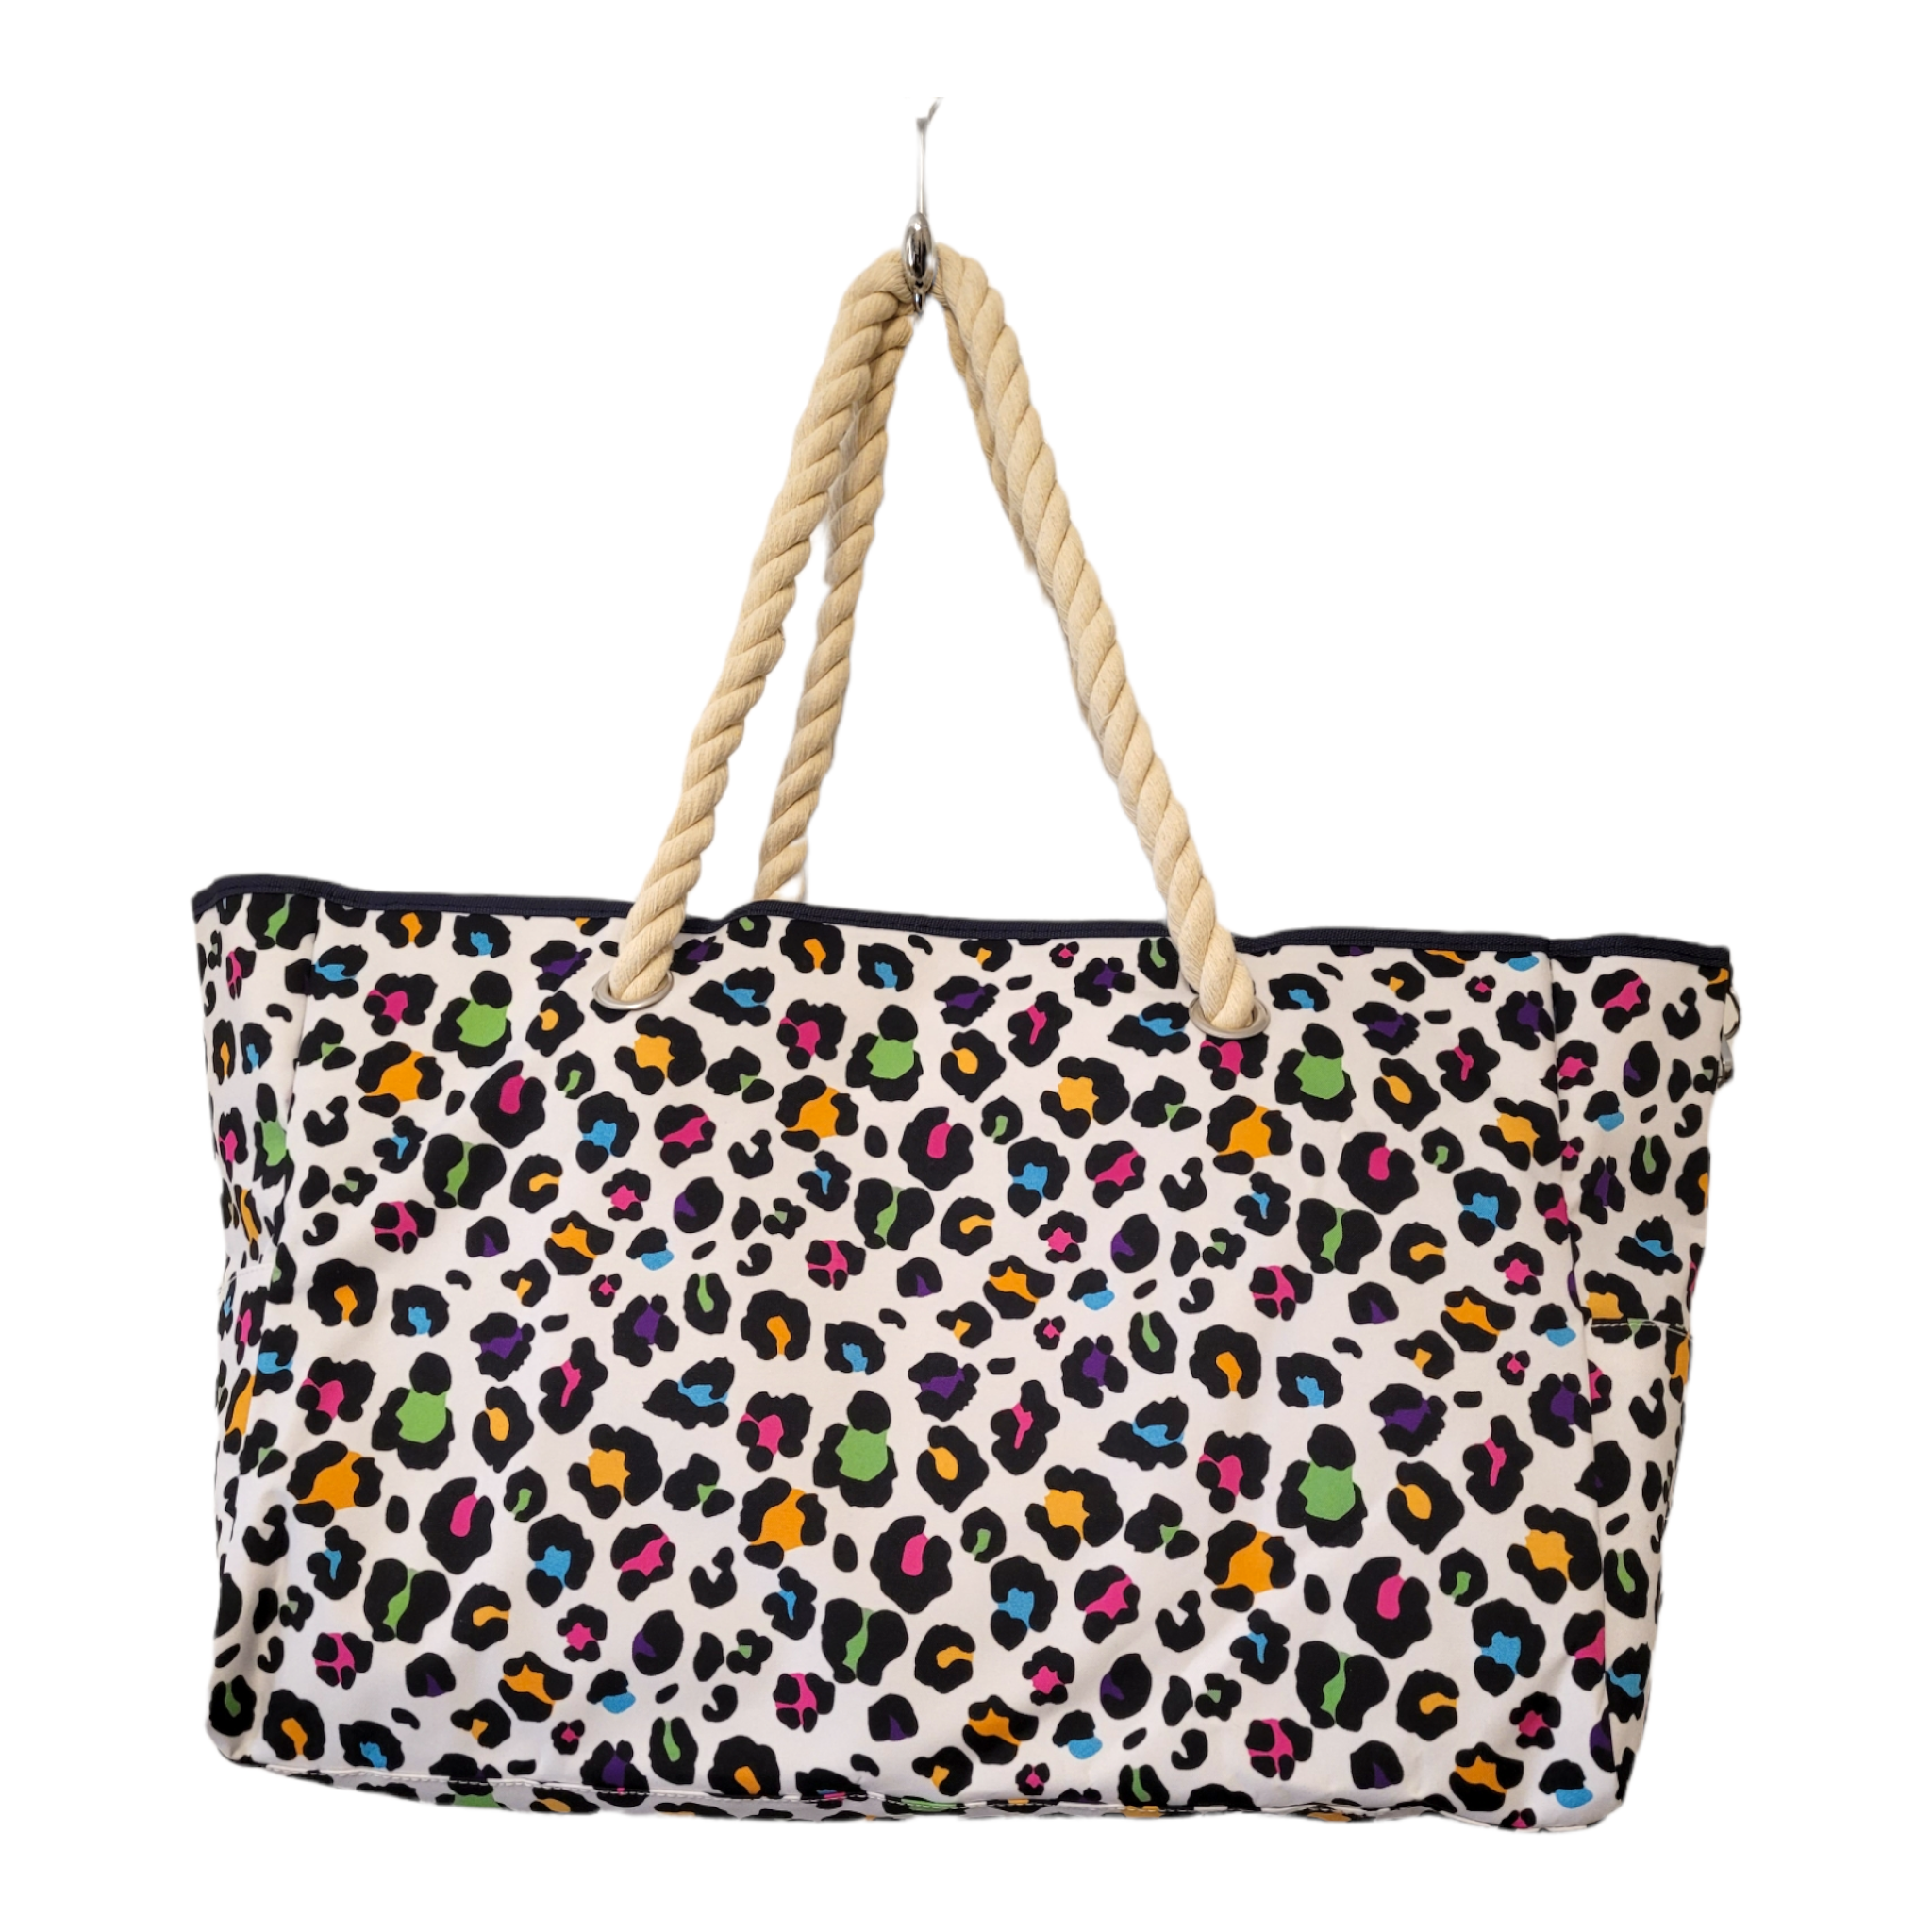 Beach Tote - Bright Multicolored Leopard-Handbags-LouisGeorge Boutique-LouisGeorge Boutique, Women’s Fashion Boutique Located in Trussville, Alabama